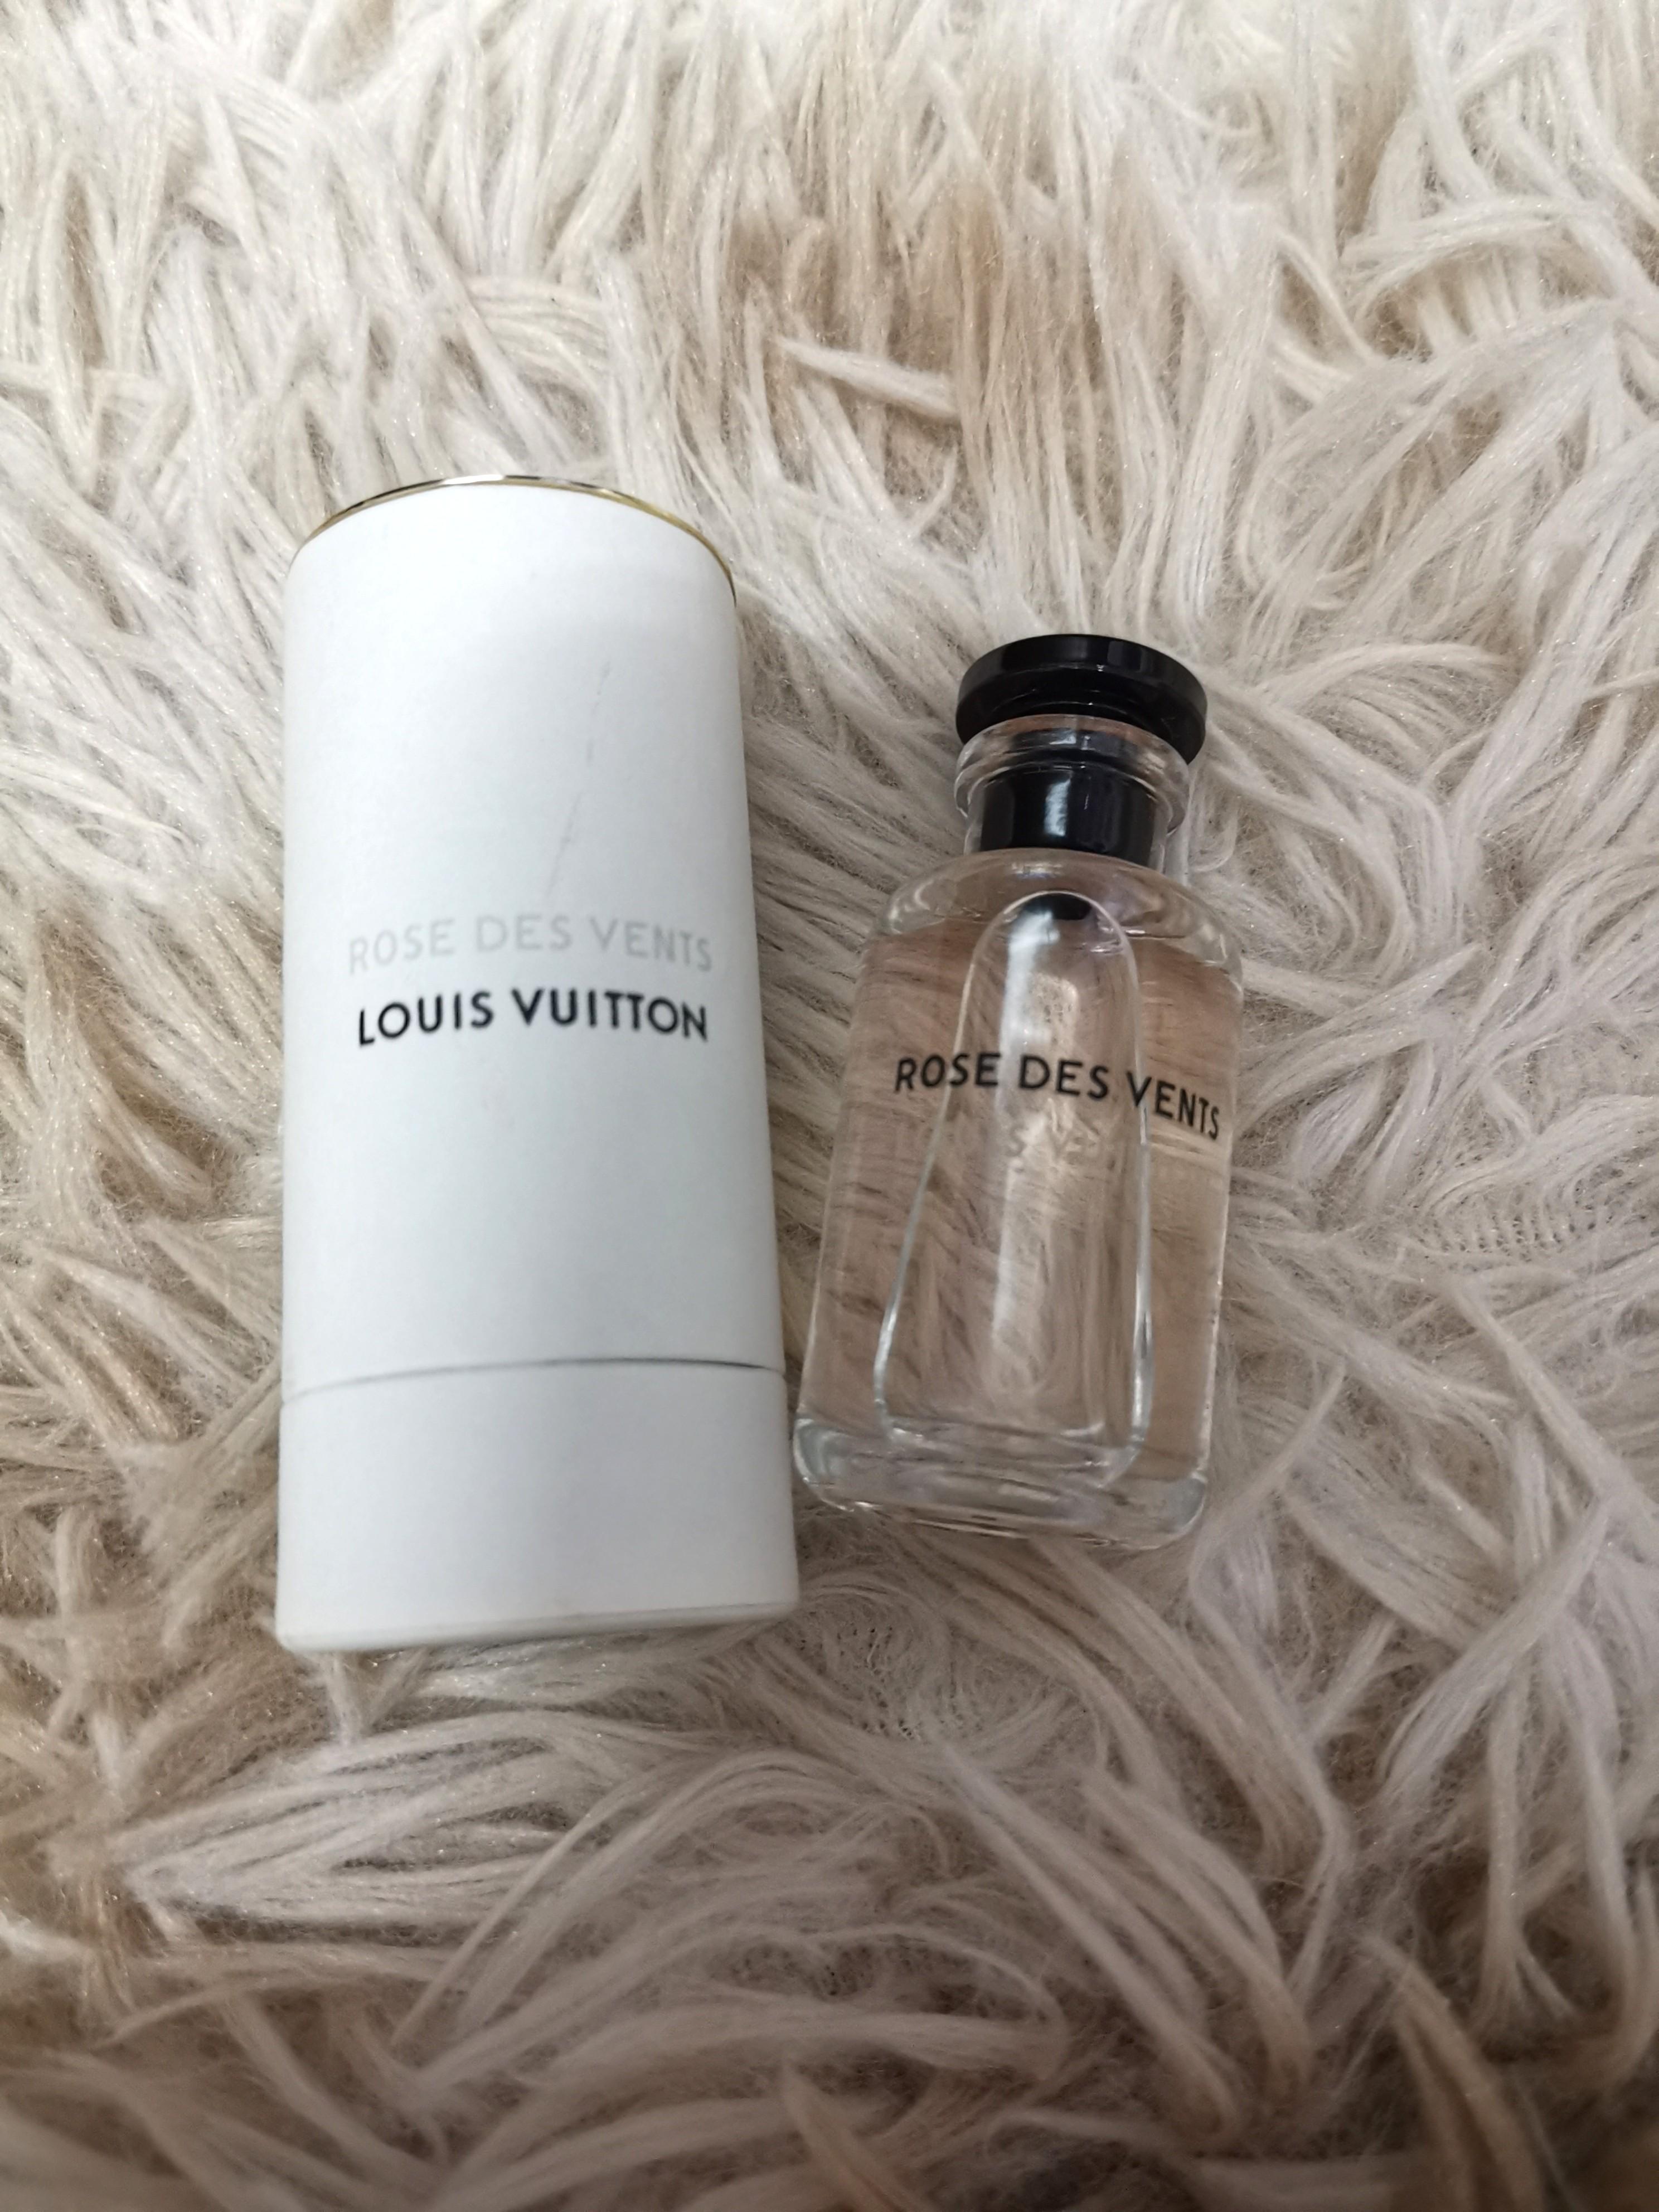 NEW Louis Vuitton NOUVEAU MONDE 0.34 OZ 10ML Eau de Parfum Perfume